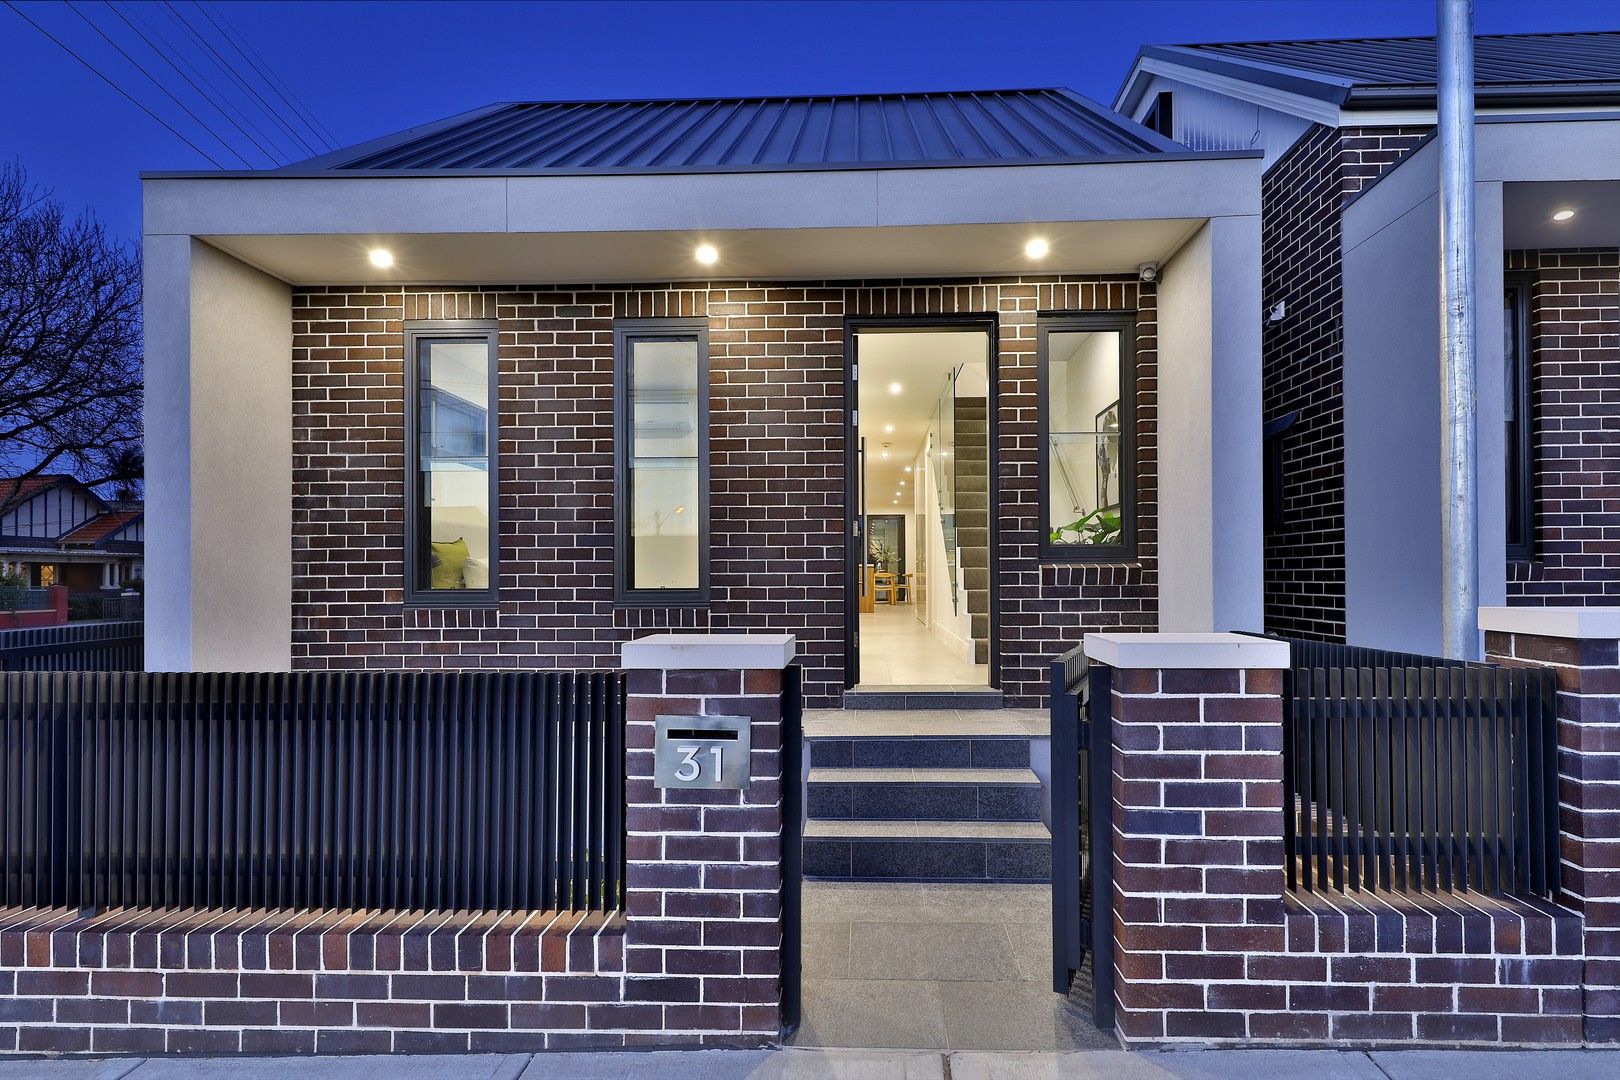 3 bedrooms House in 31 Steward Street LILYFIELD NSW, 2040